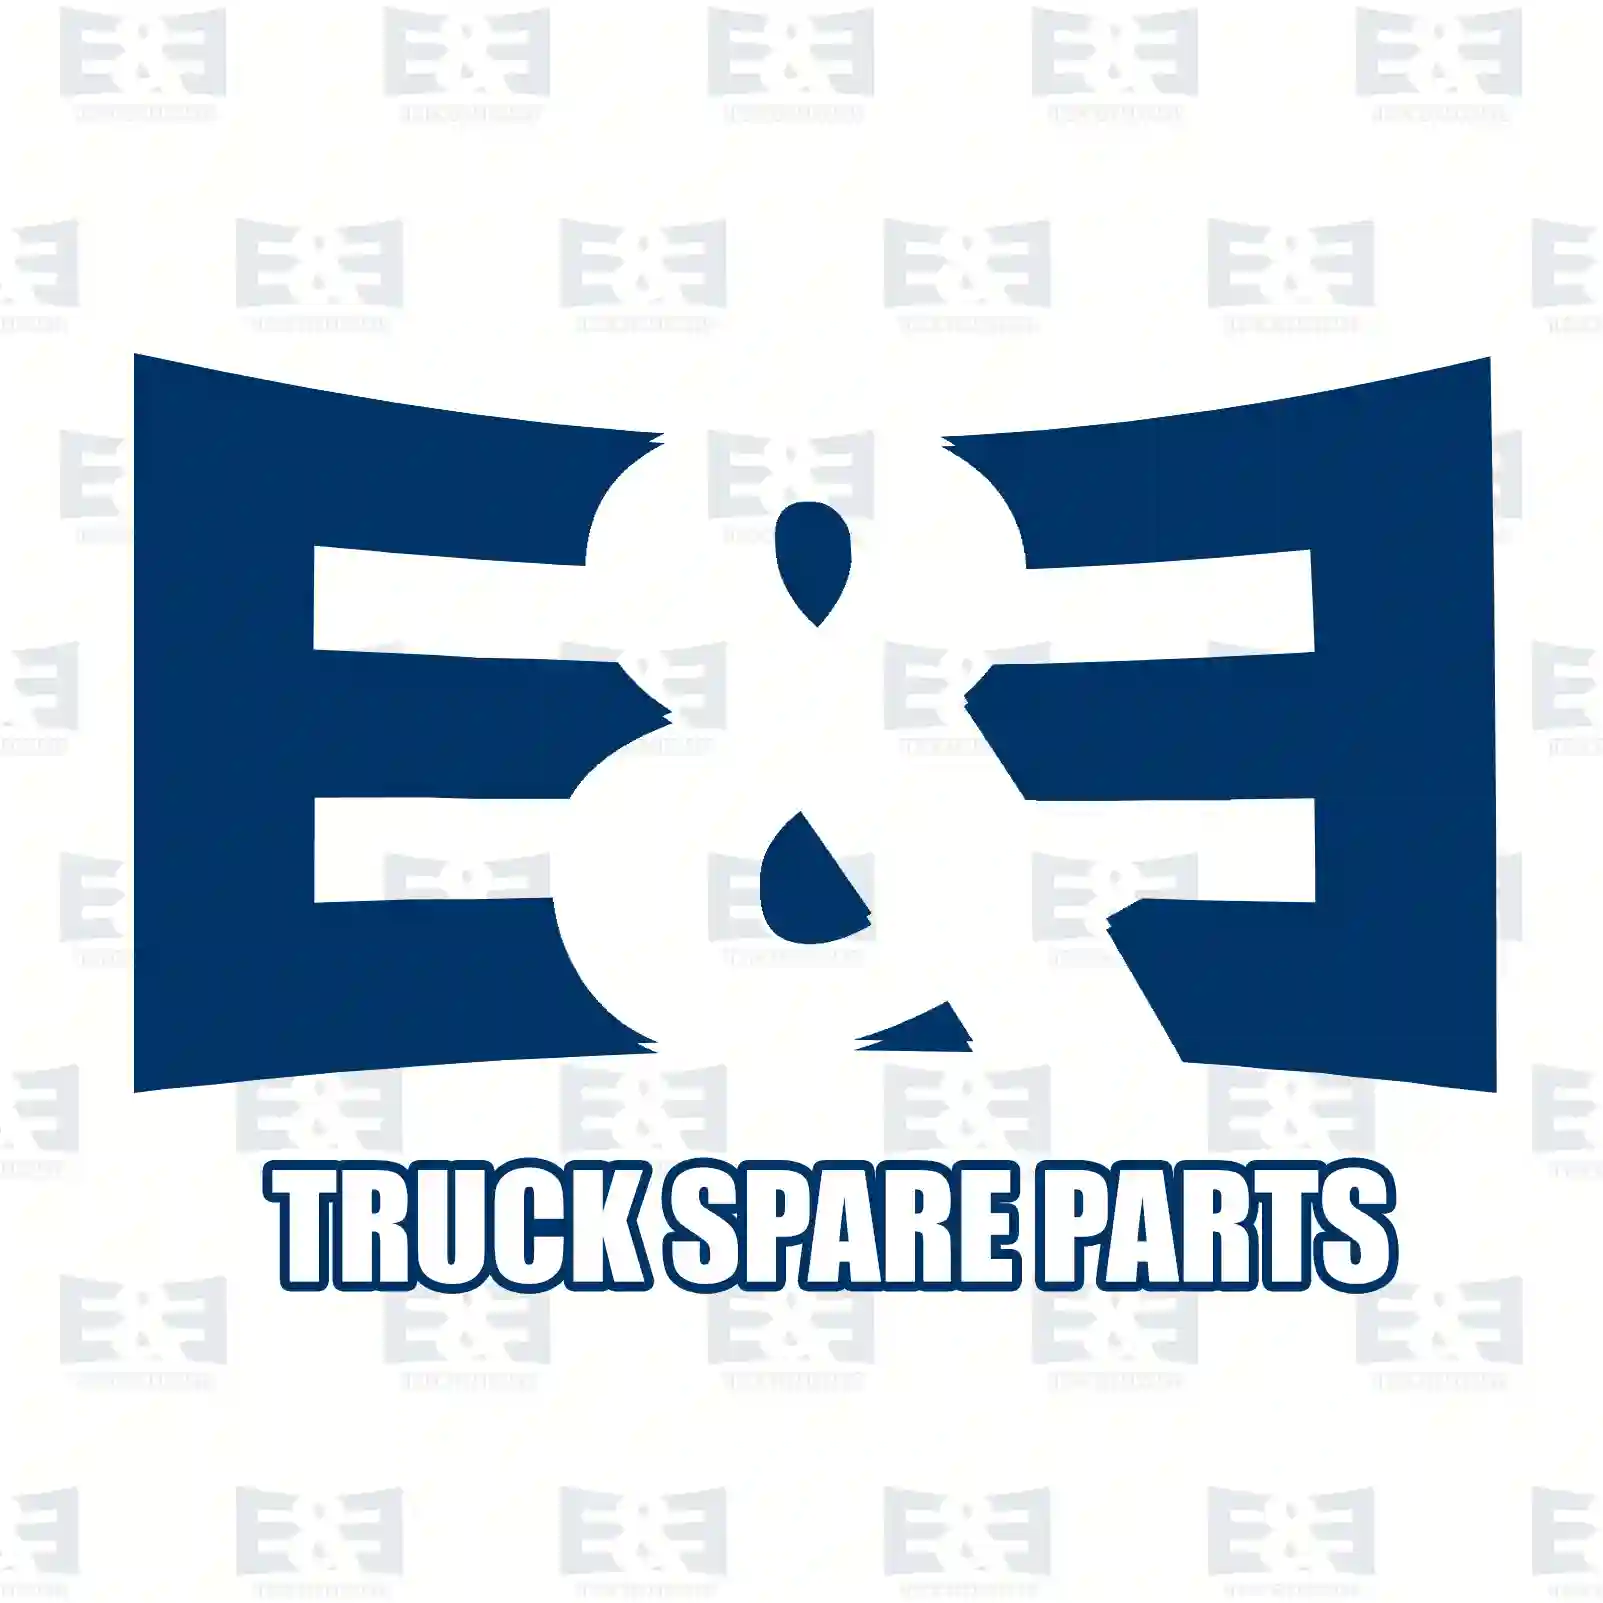 Bracket, 2E2204999, 81155025289, 8115 ||  2E2204999 E&E Truck Spare Parts | Truck Spare Parts, Auotomotive Spare Parts Bracket, 2E2204999, 81155025289, 8115 ||  2E2204999 E&E Truck Spare Parts | Truck Spare Parts, Auotomotive Spare Parts